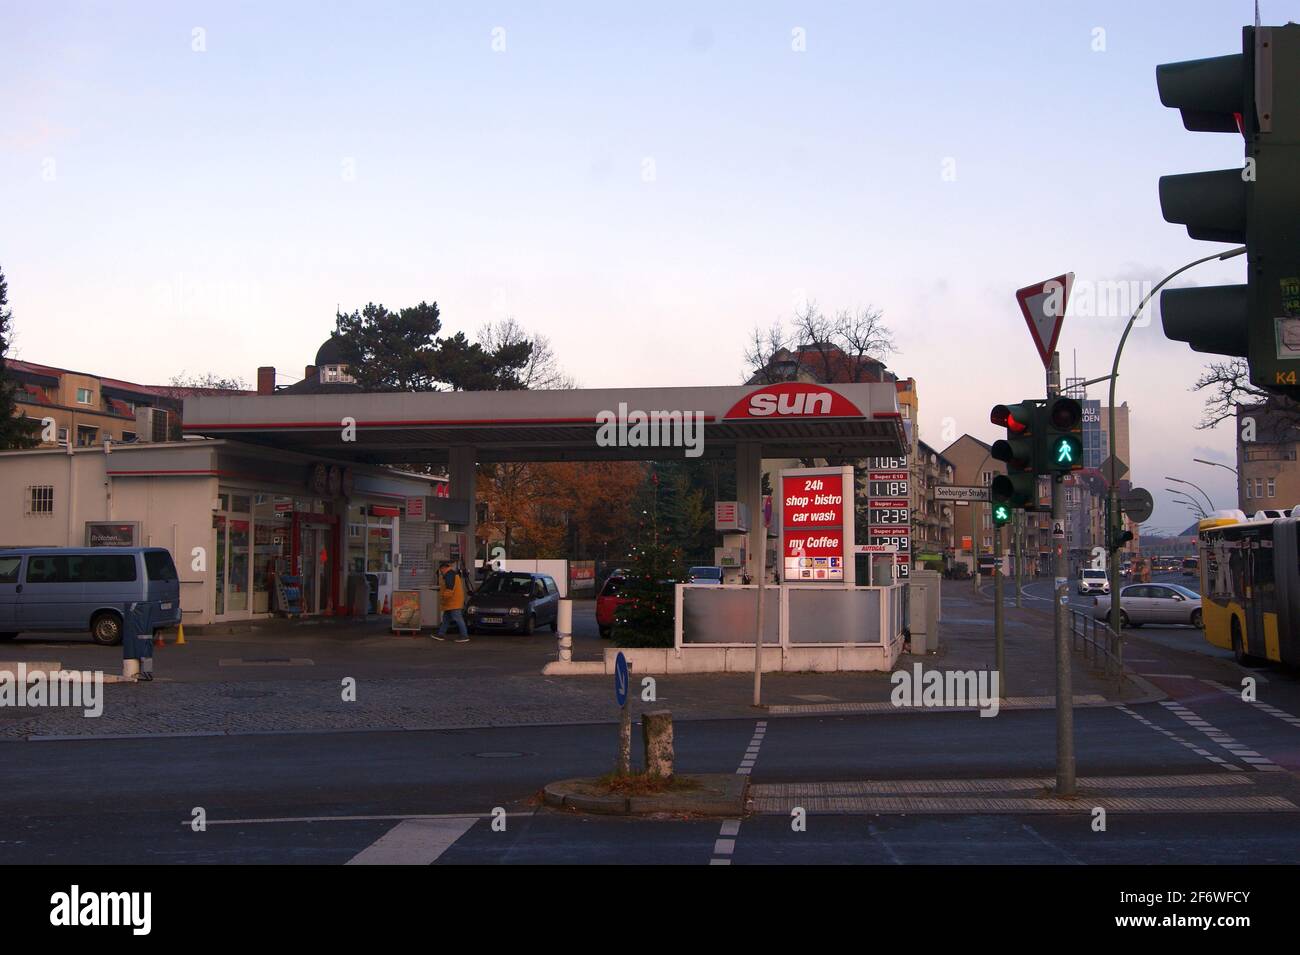 Sun-Tankstelle an der Kreuzung Klosterstraße Ecke Seeburger Straße in der Wilhelmstadt, Berlin-Spandau Stock Photo